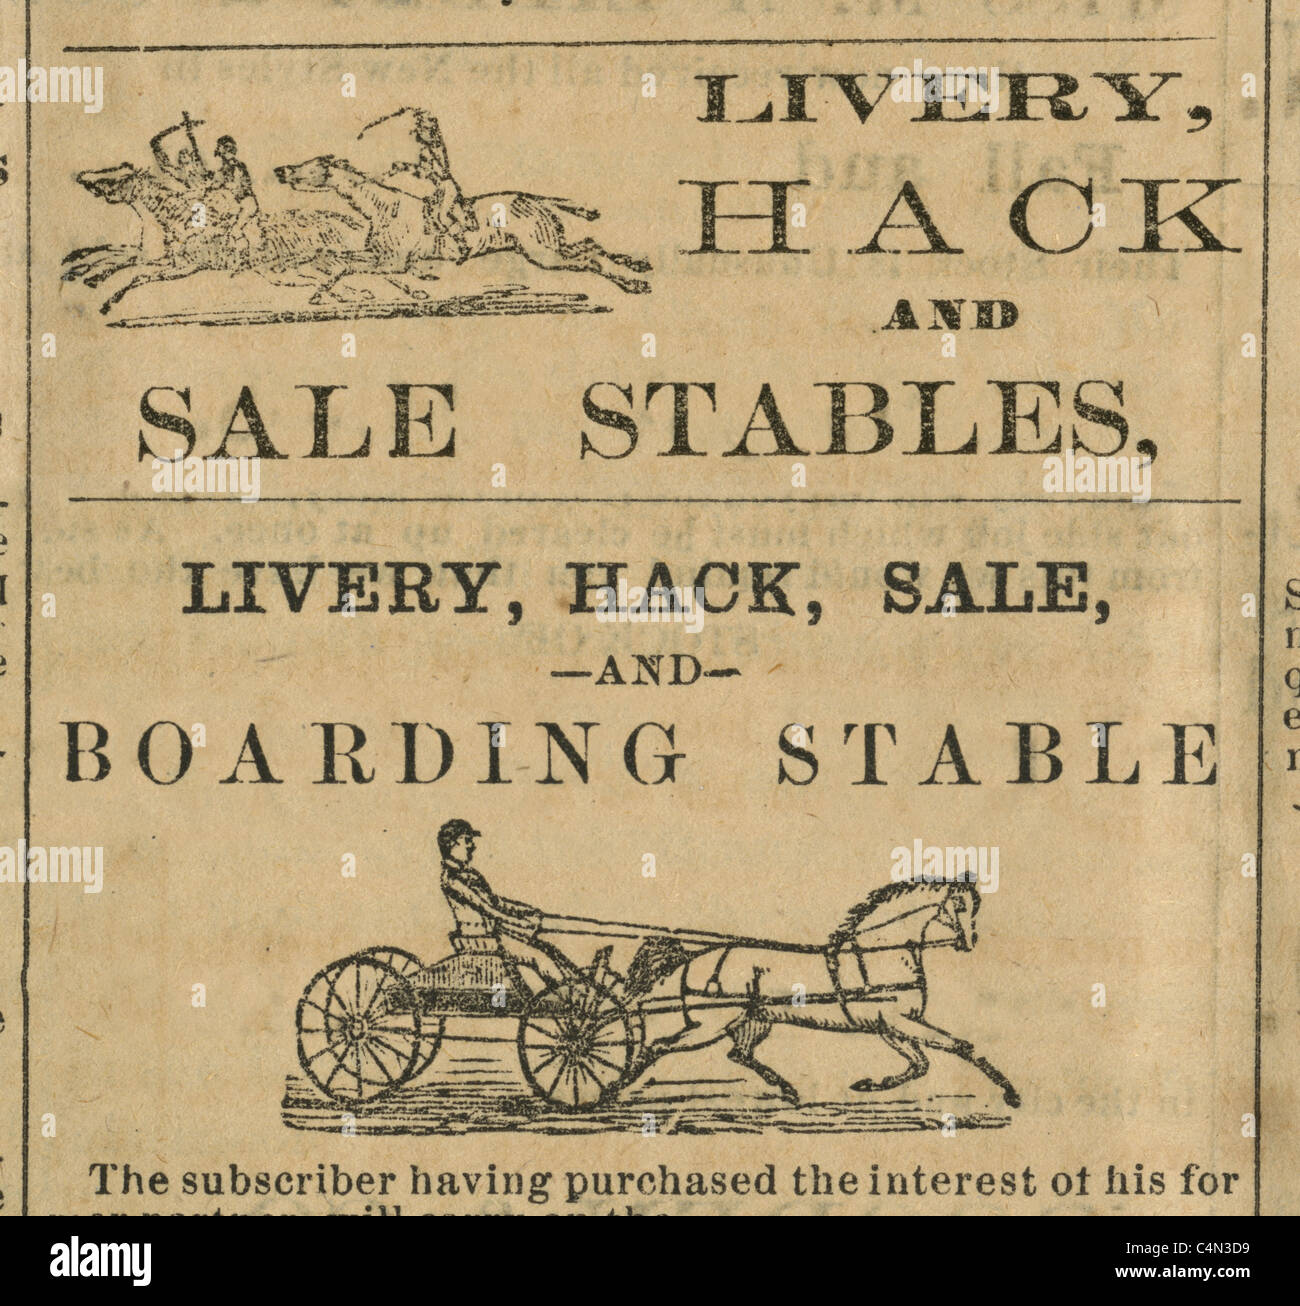 Detalle desde 1875 dos grabados de librea Hack establos anuncios del reportero Kennebec de Gardiner, Maine, Estados Unidos. Foto de stock